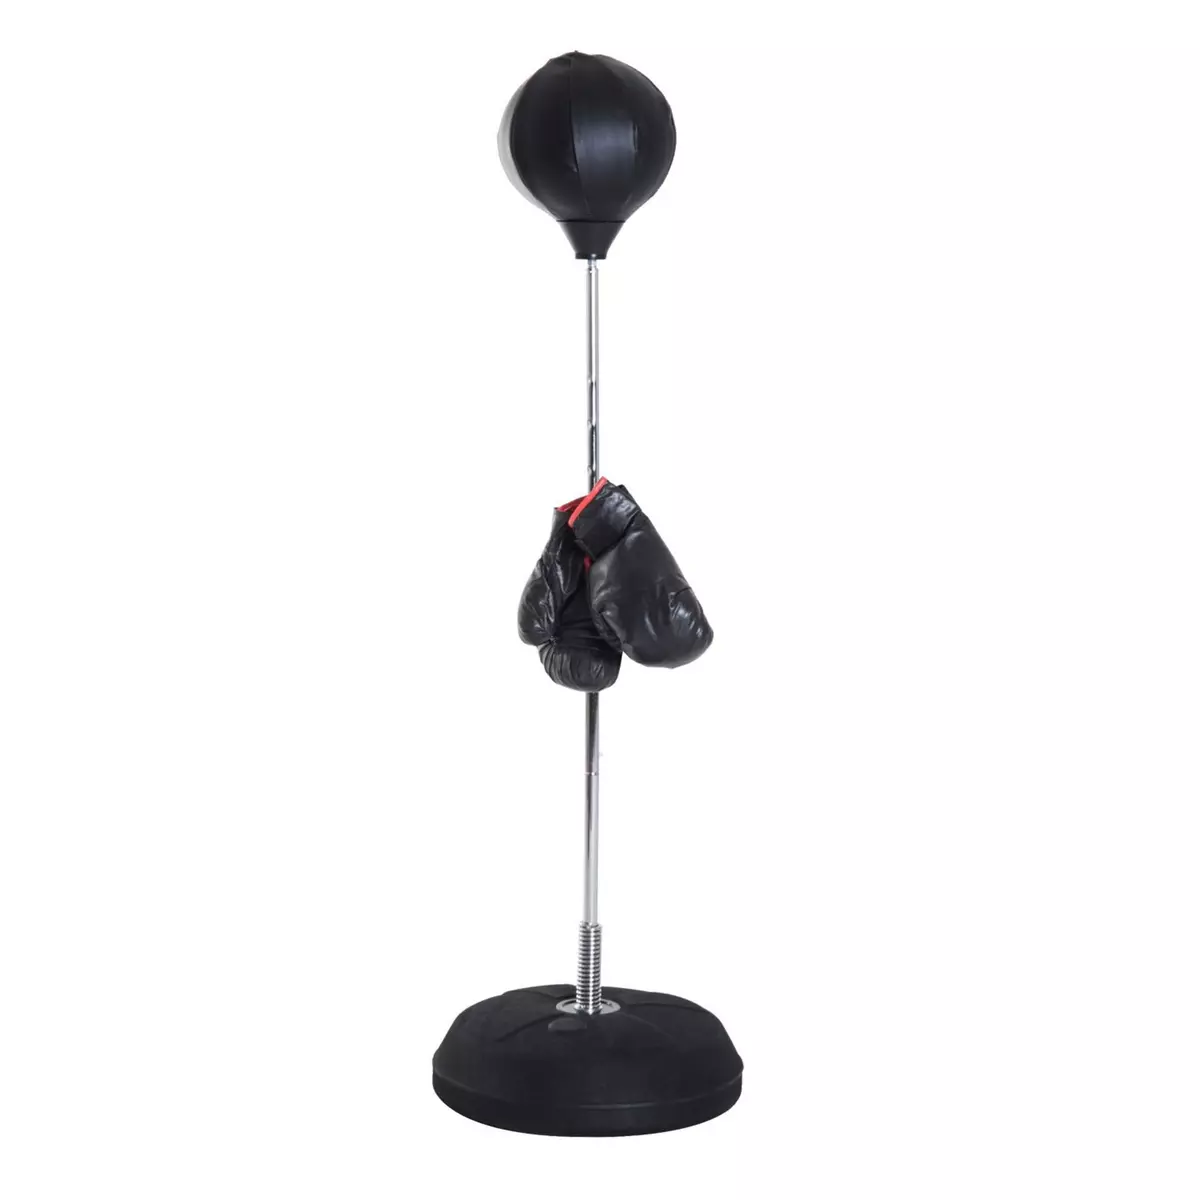 HOMCOM Punching ball sur pied réglable en hauteur 126-144 cm avec gants, pompe et base de lestage noir